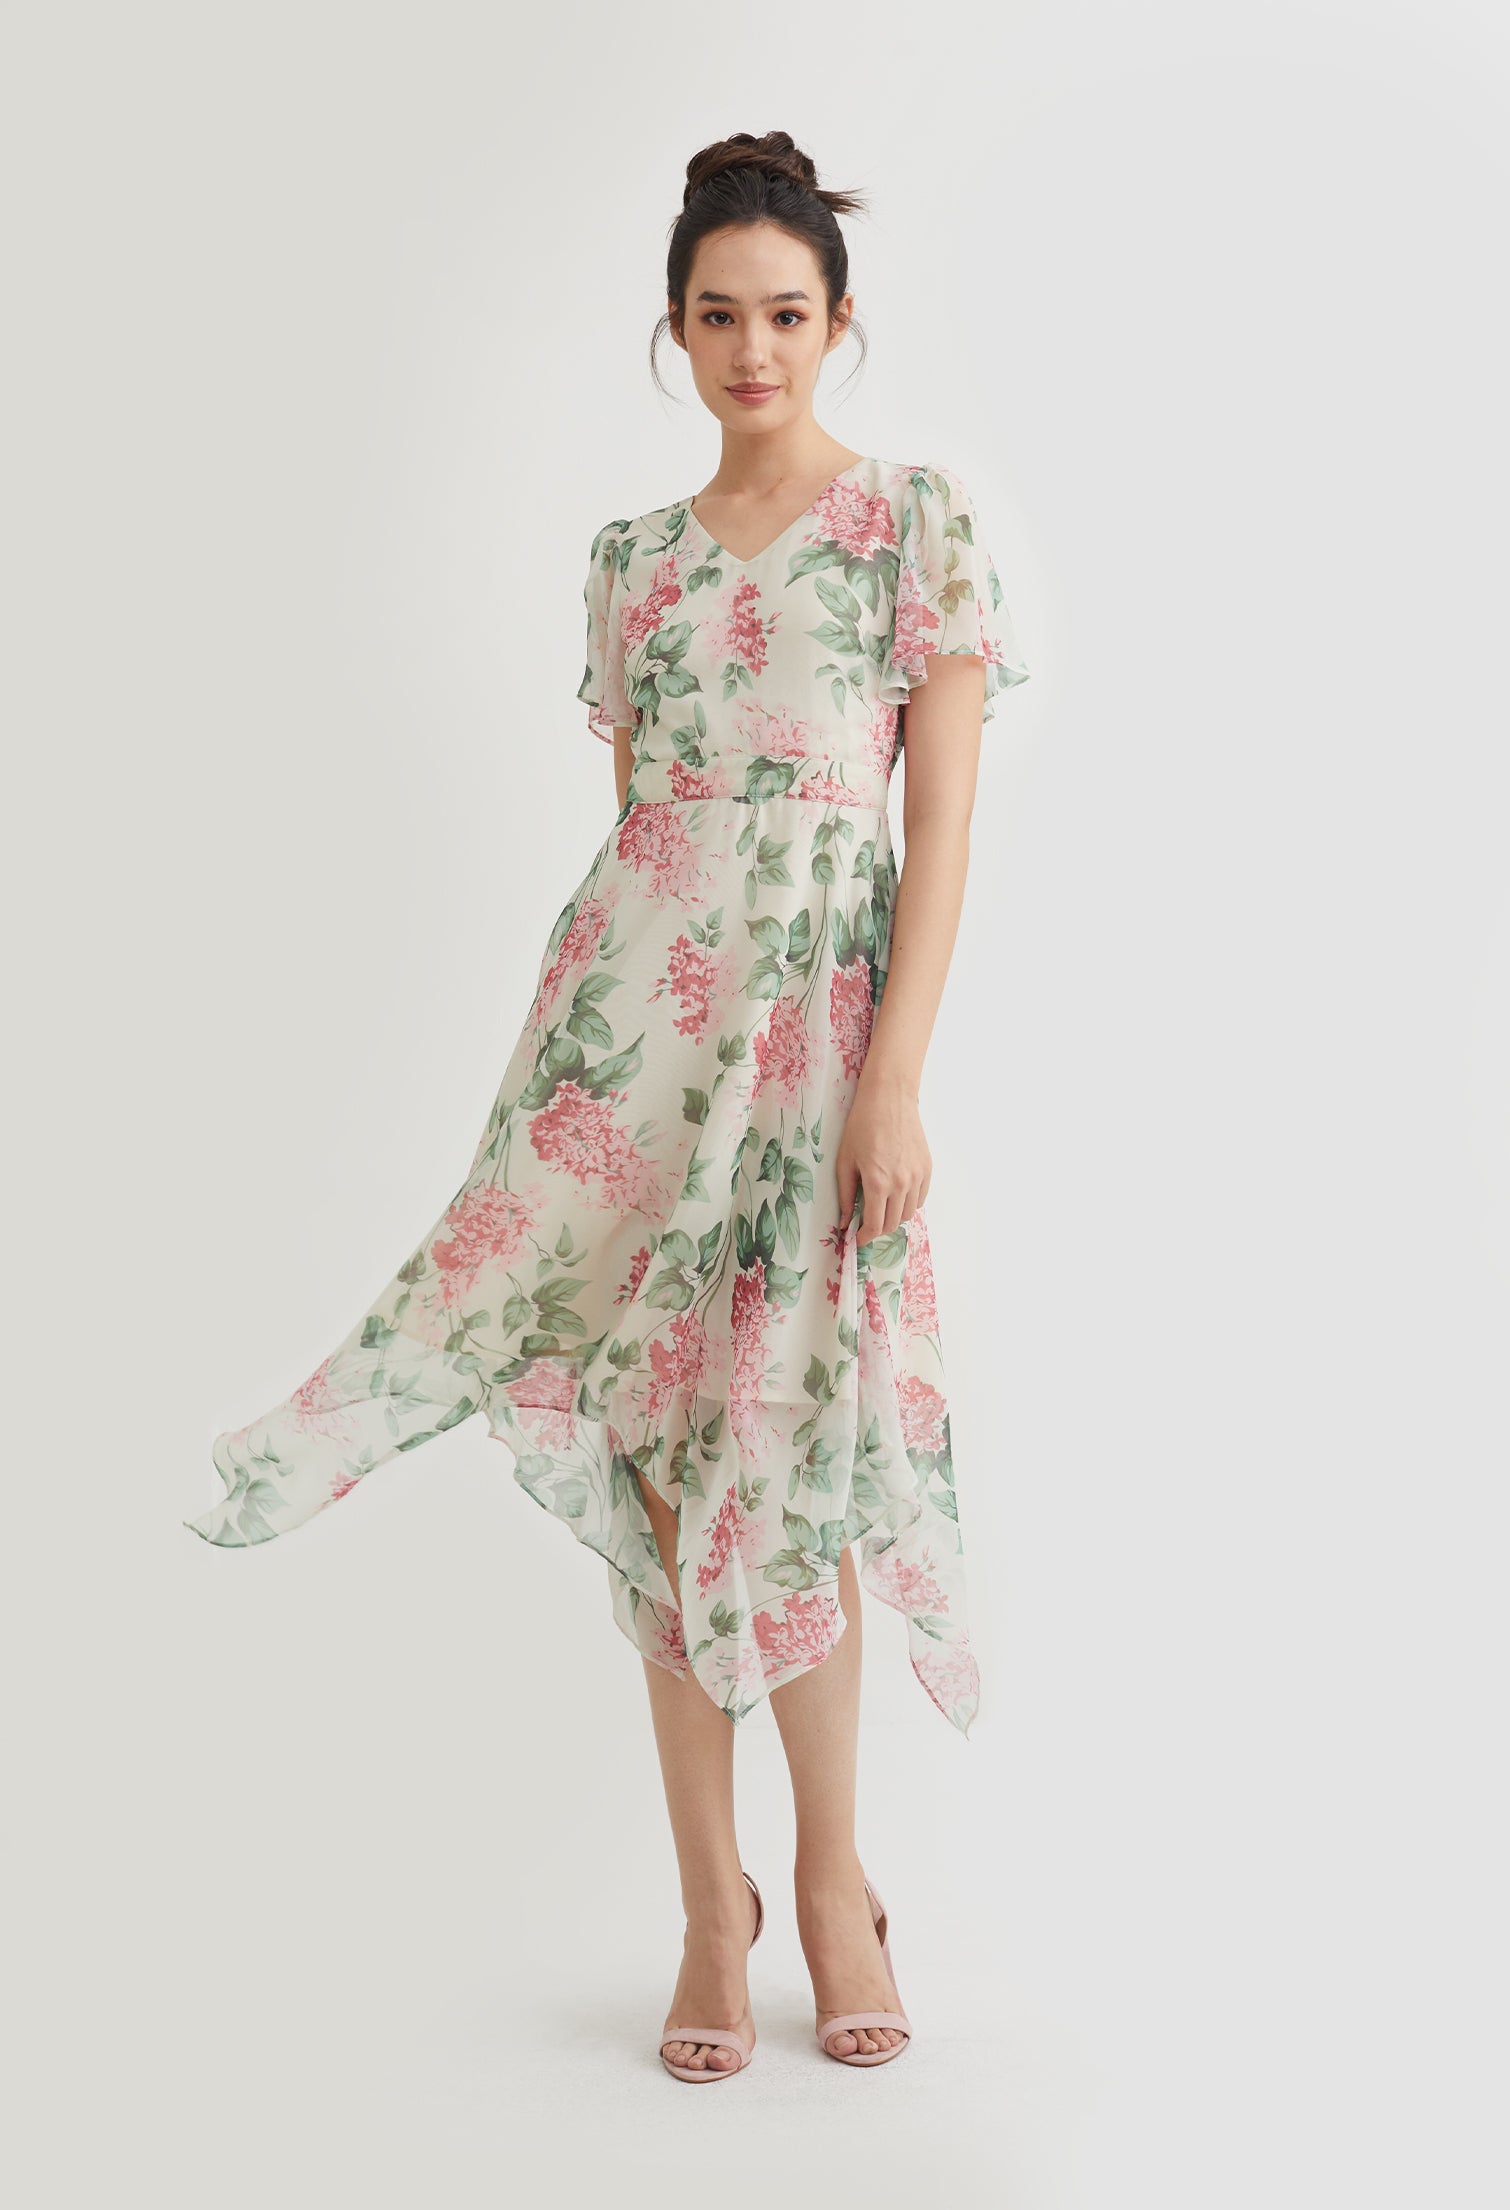 Sweetheart Floral Flowy Dress